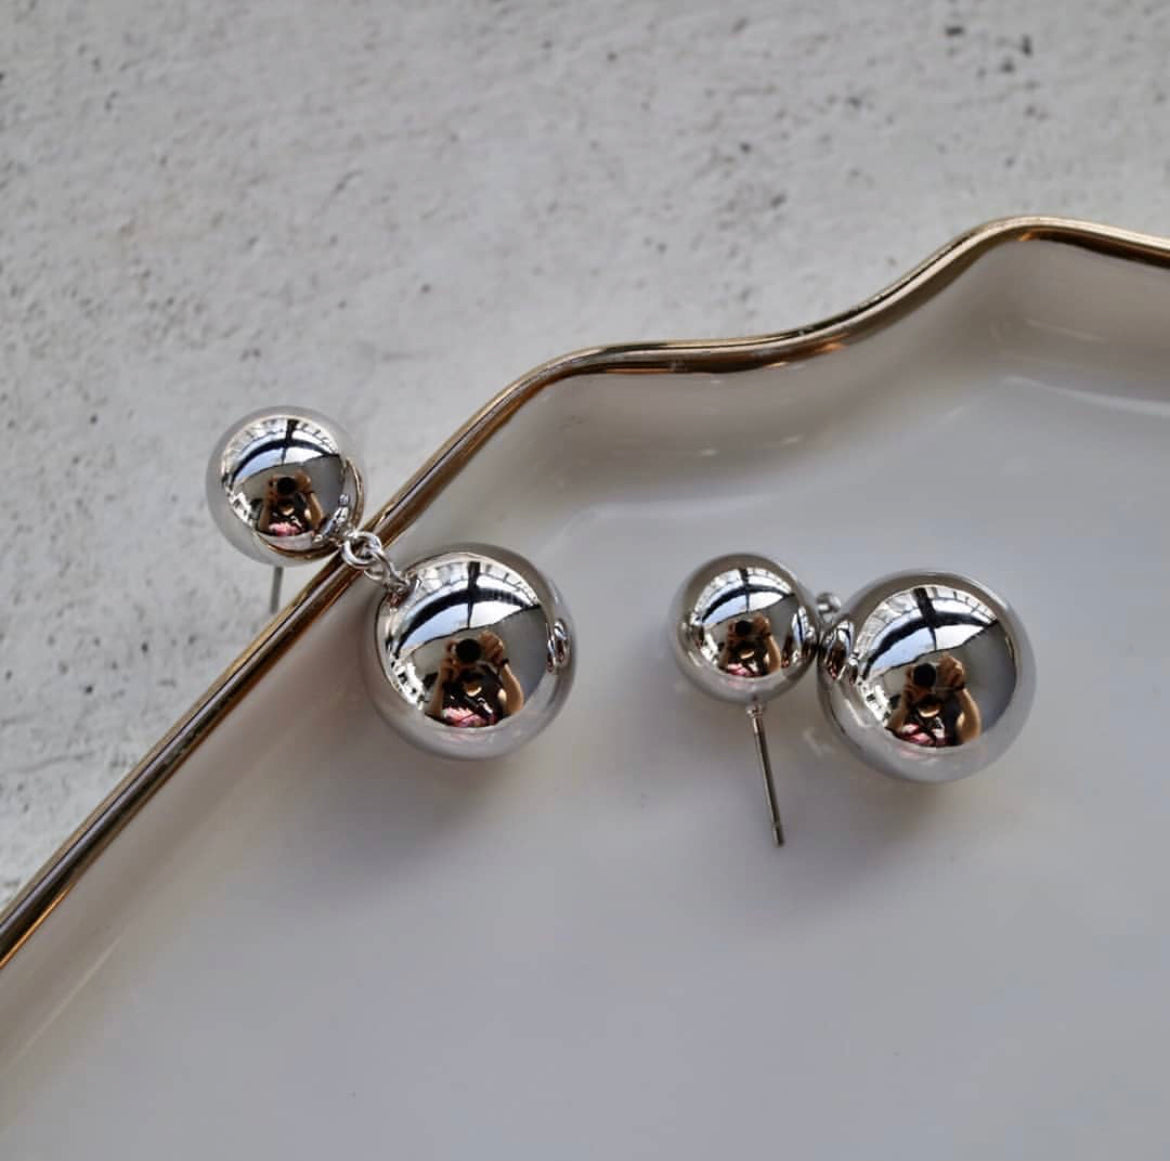 Hudson Earrings in Silver